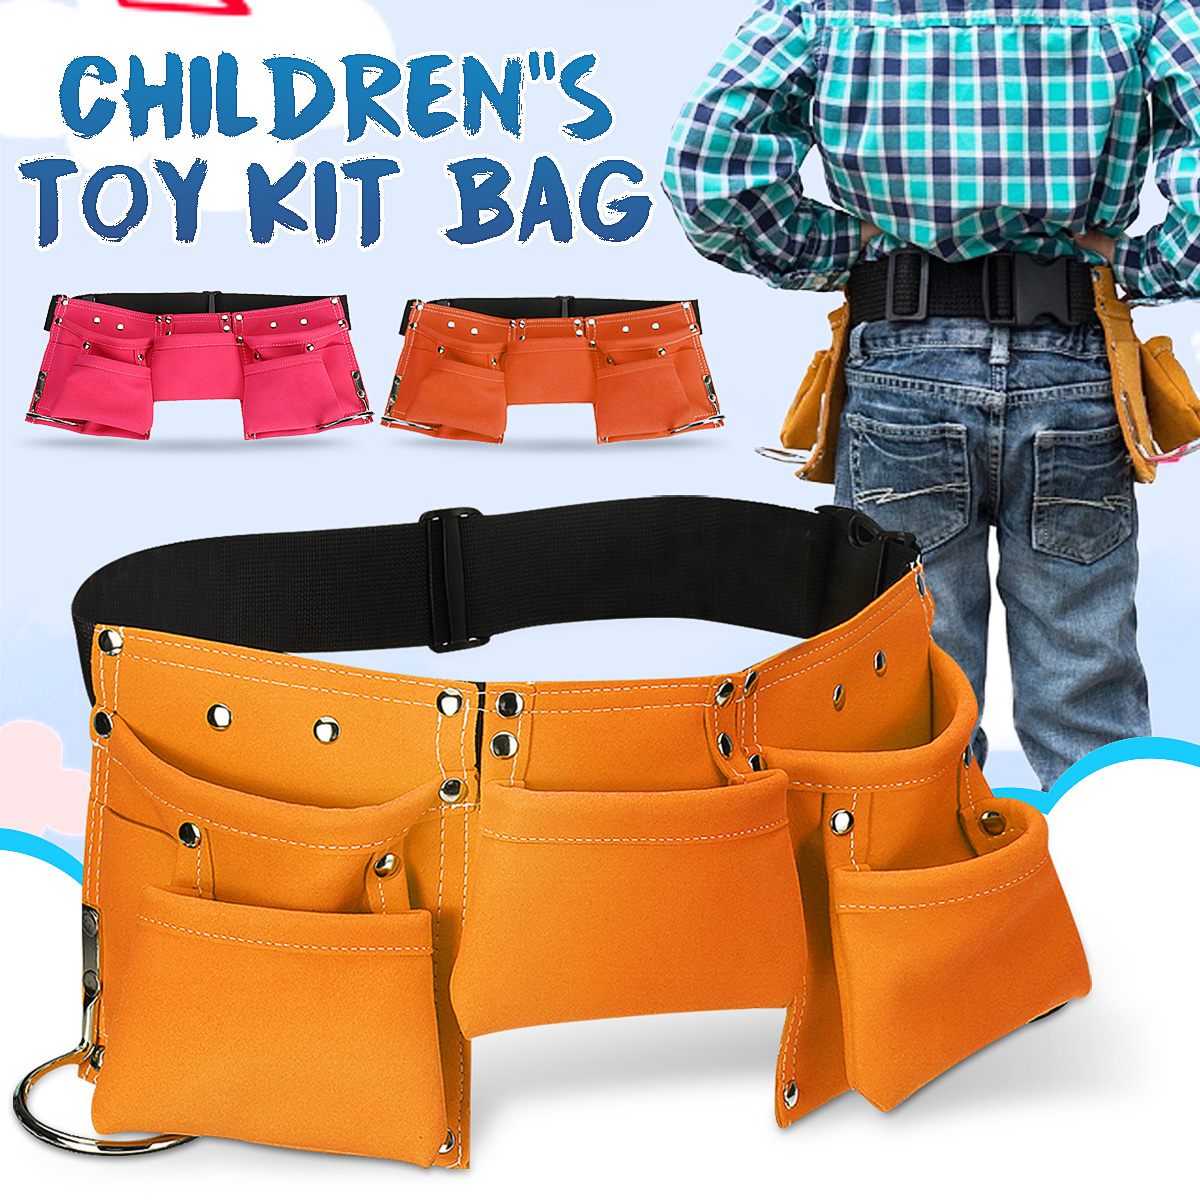 Kids-Tool-Belt-Children-Tool-Pouch-Bag-Waist-Multi-Bag-For-Role-Play-Garden-Adventure-1629647-1